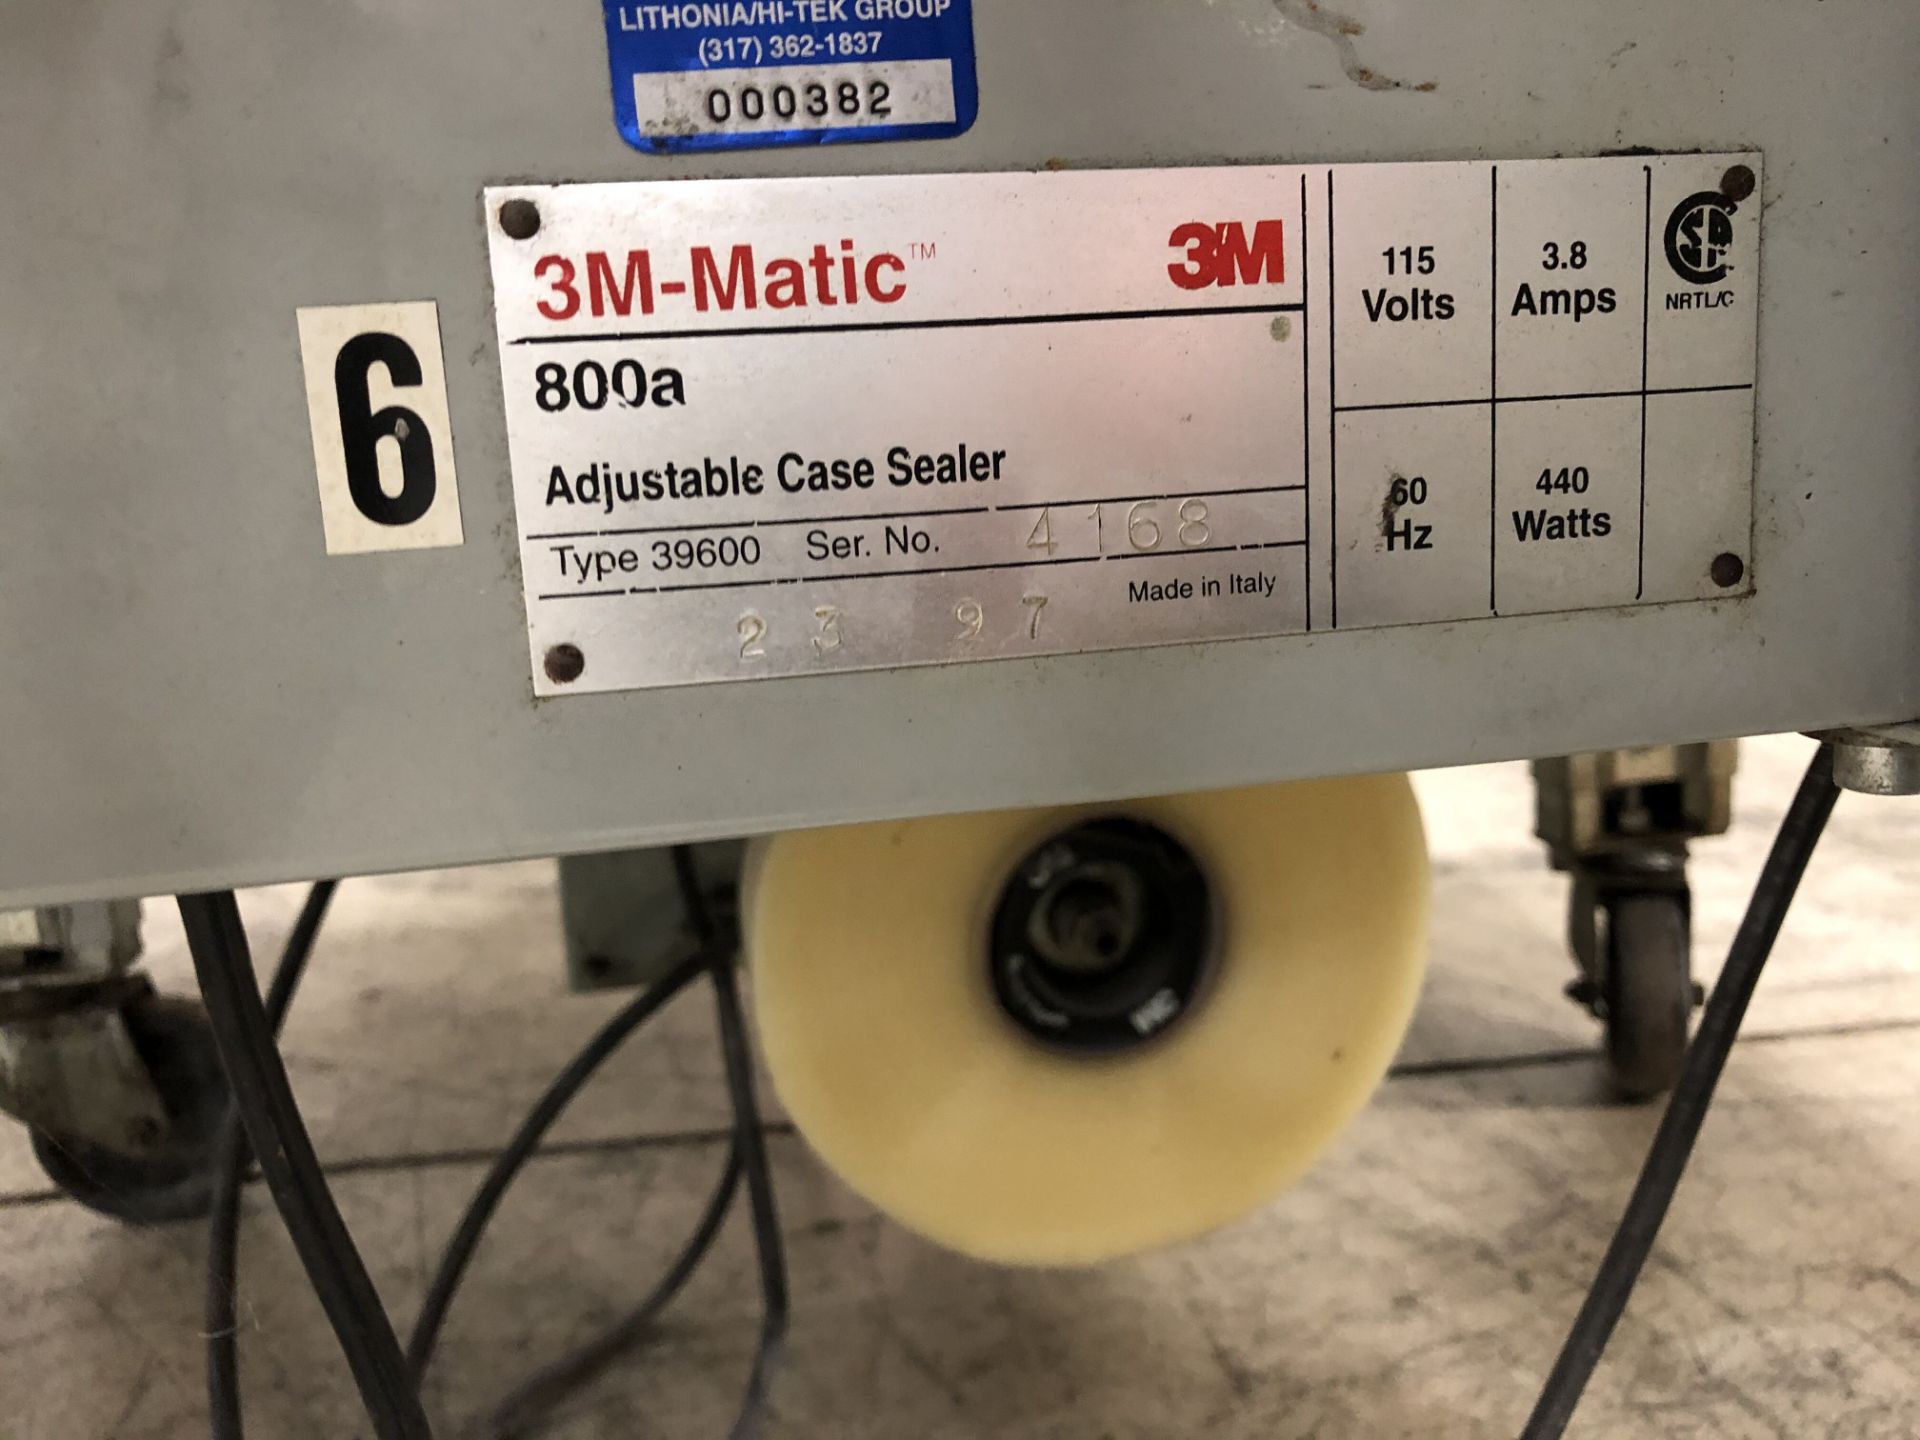 3M-Matic 800a Adjustable Case Sealer, Model #39600, S/N #4168, 115 Volts - Image 3 of 6